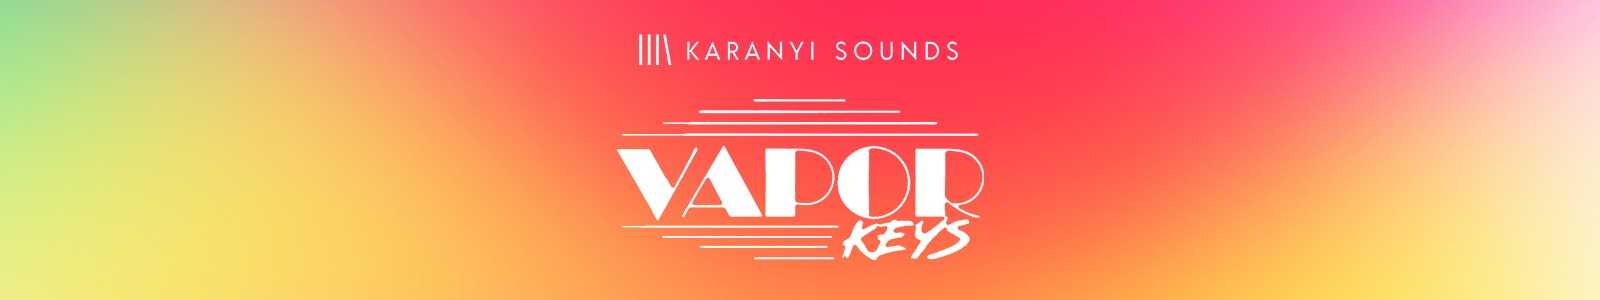 Vapor Keys Enhanced by Karanyi Sounds